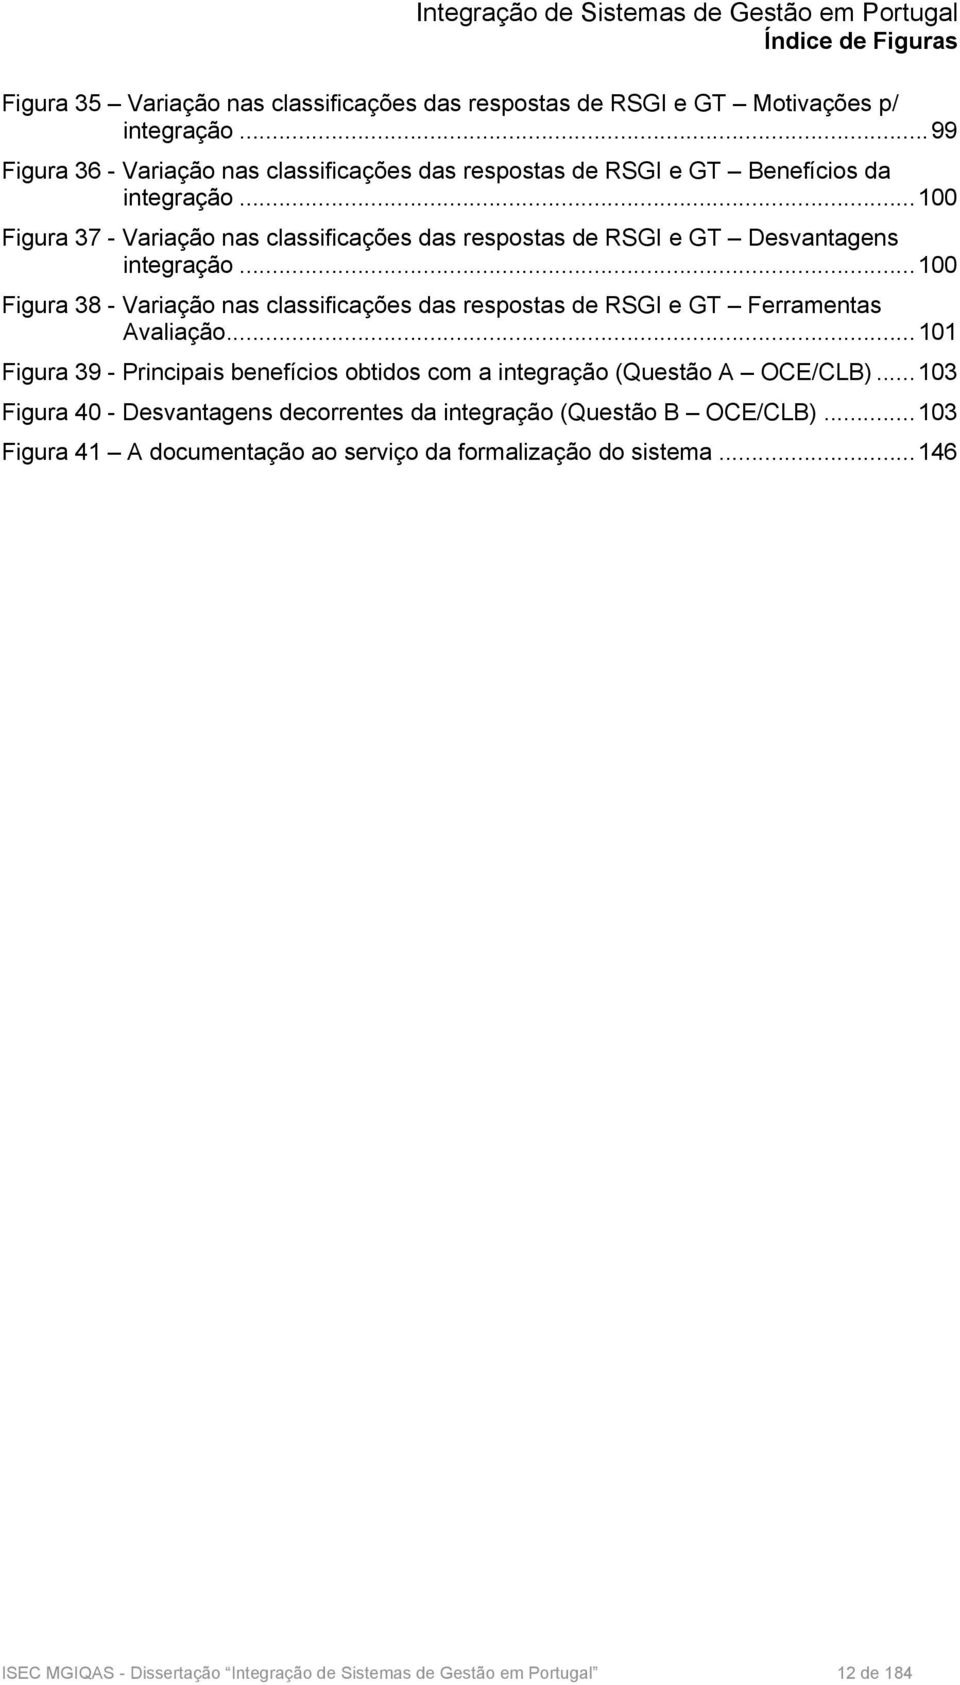 .. 100 Figura 37 - Variação nas classificações das respostas de RSGI e GT Desvantagens integração.